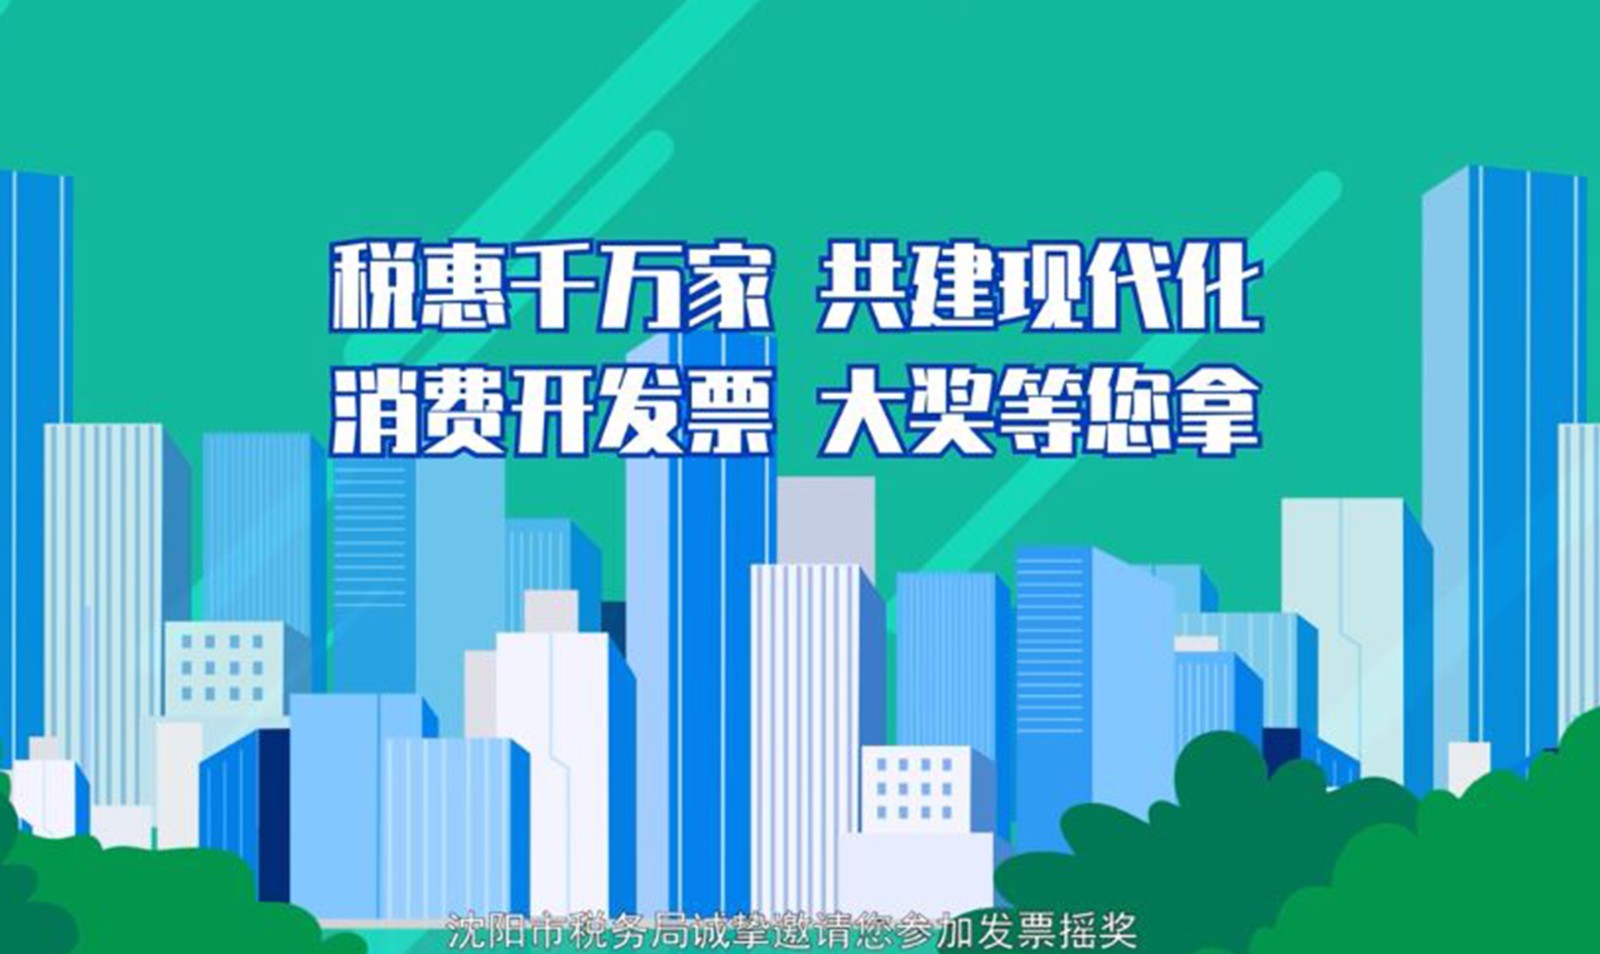 沈阳市税务局发票摇奖宣传动漫短片 